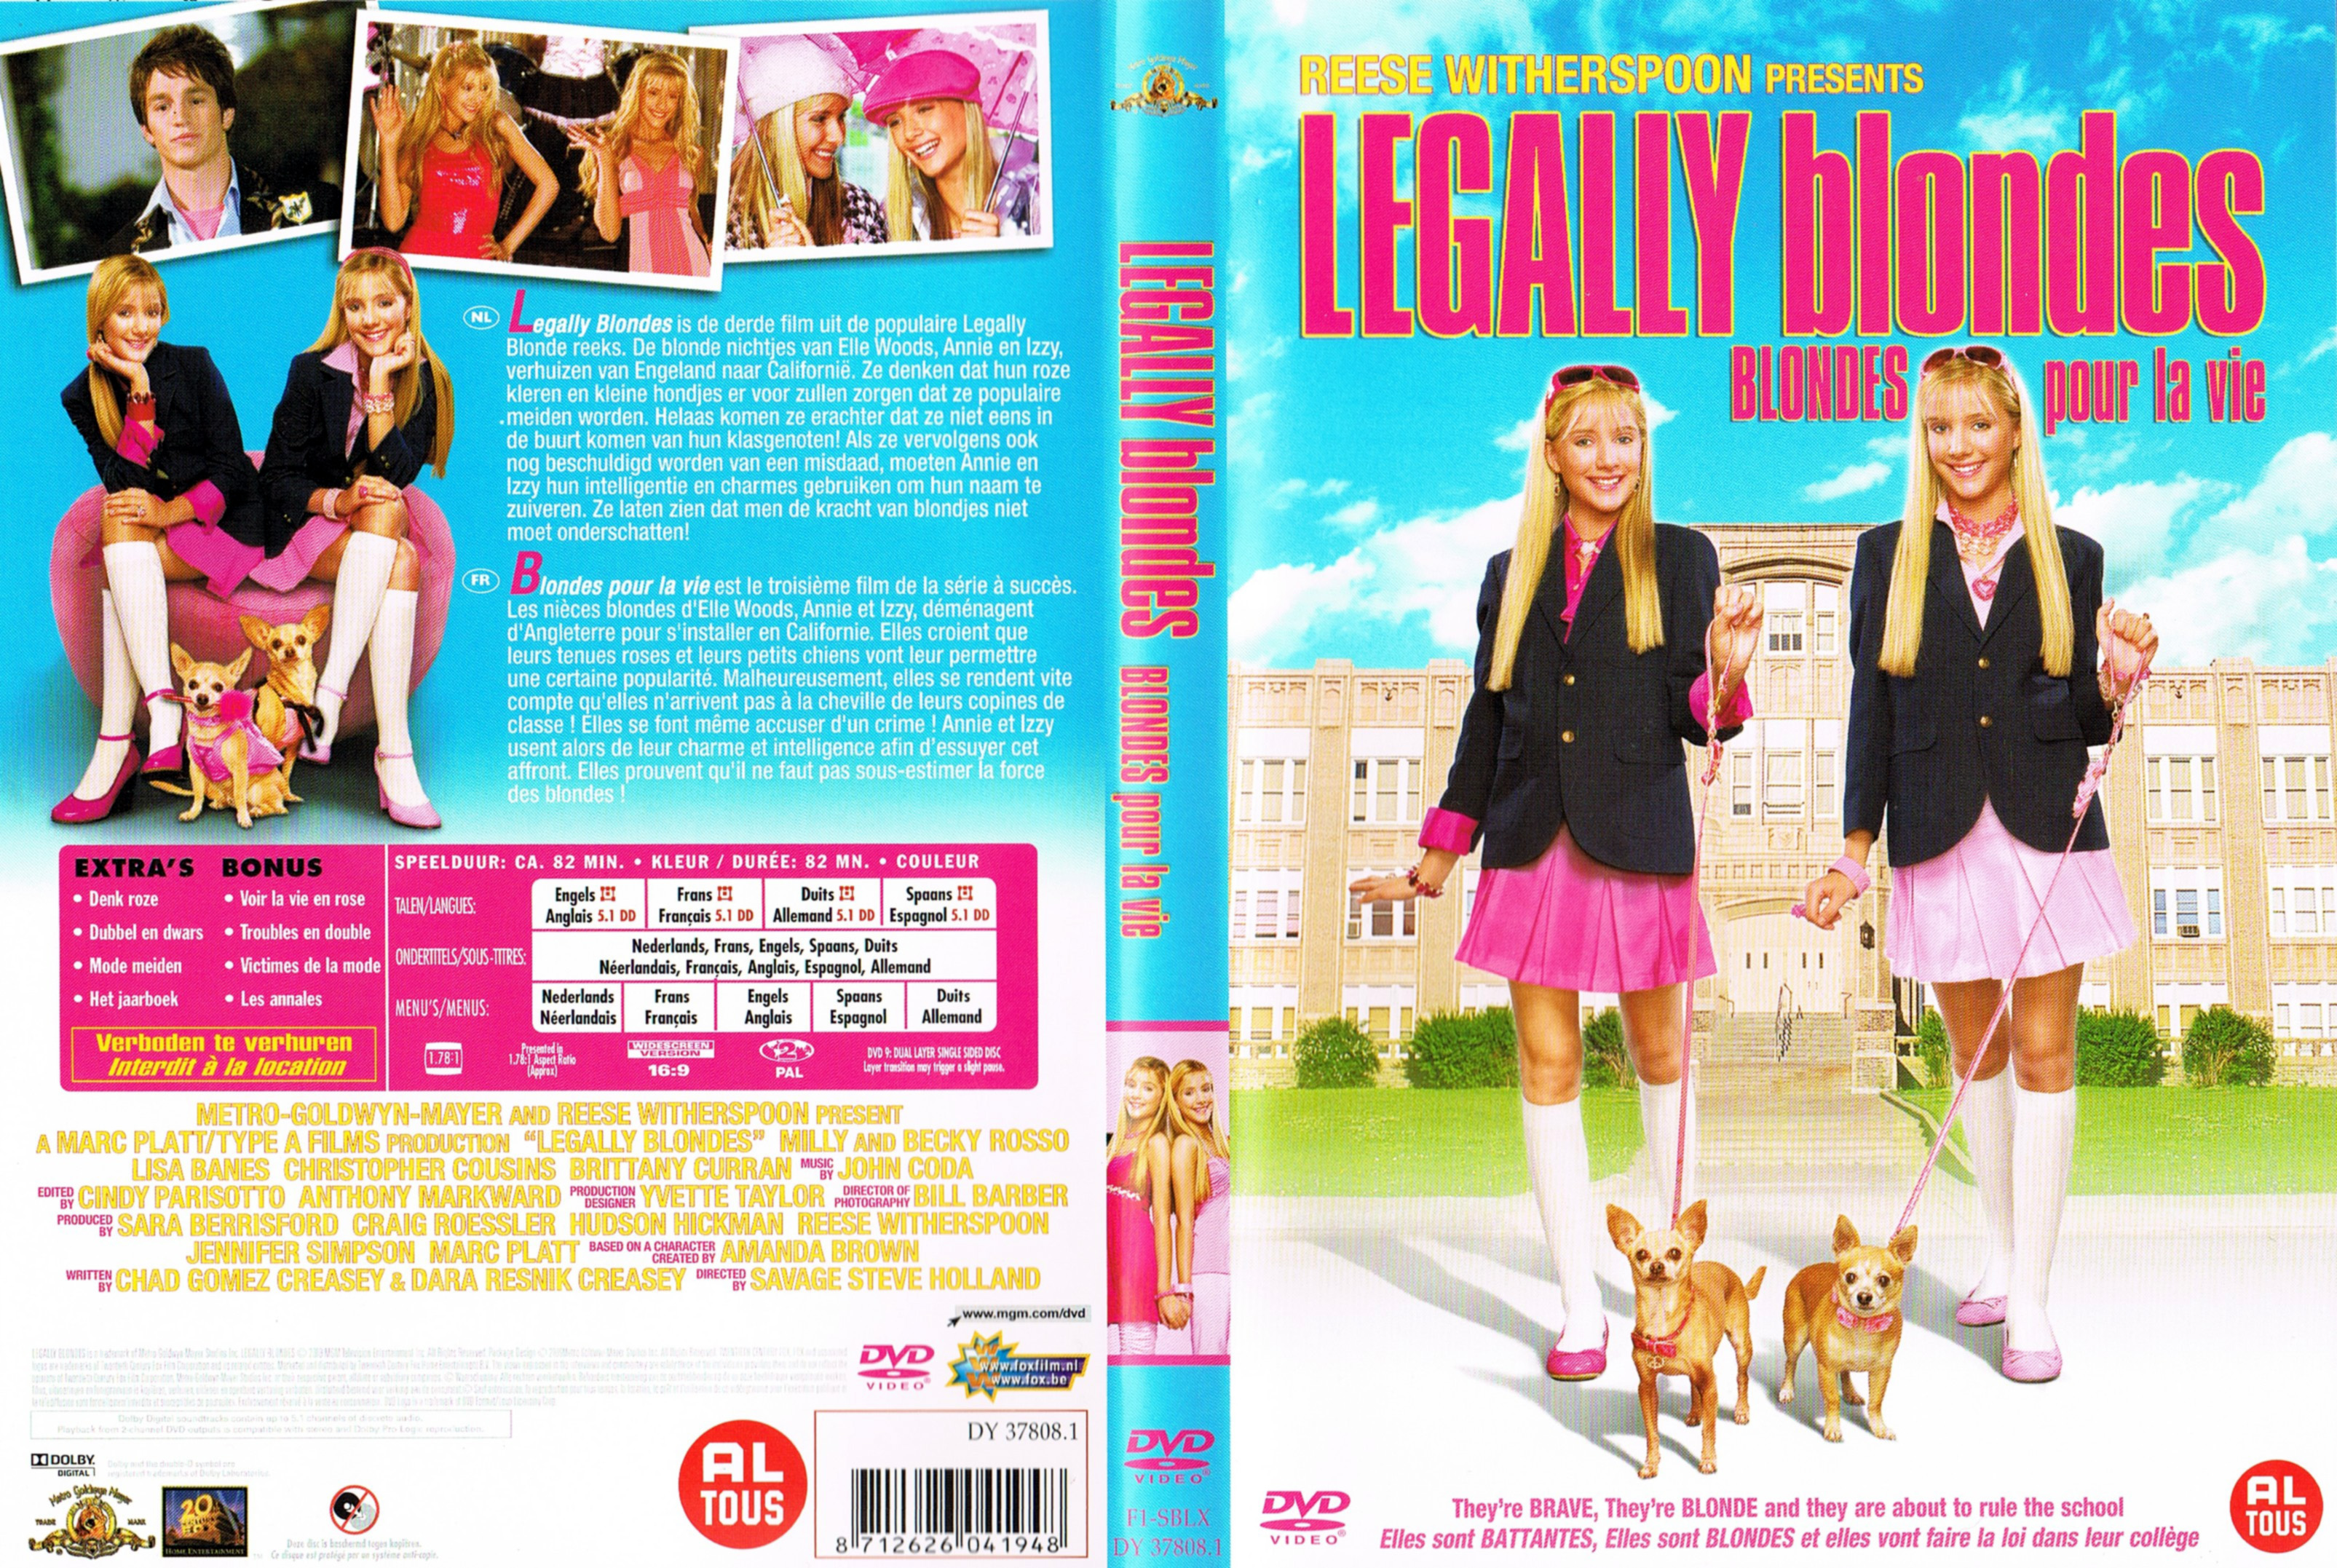 Jaquette DVD Legally blondes - Blondes pour la vie